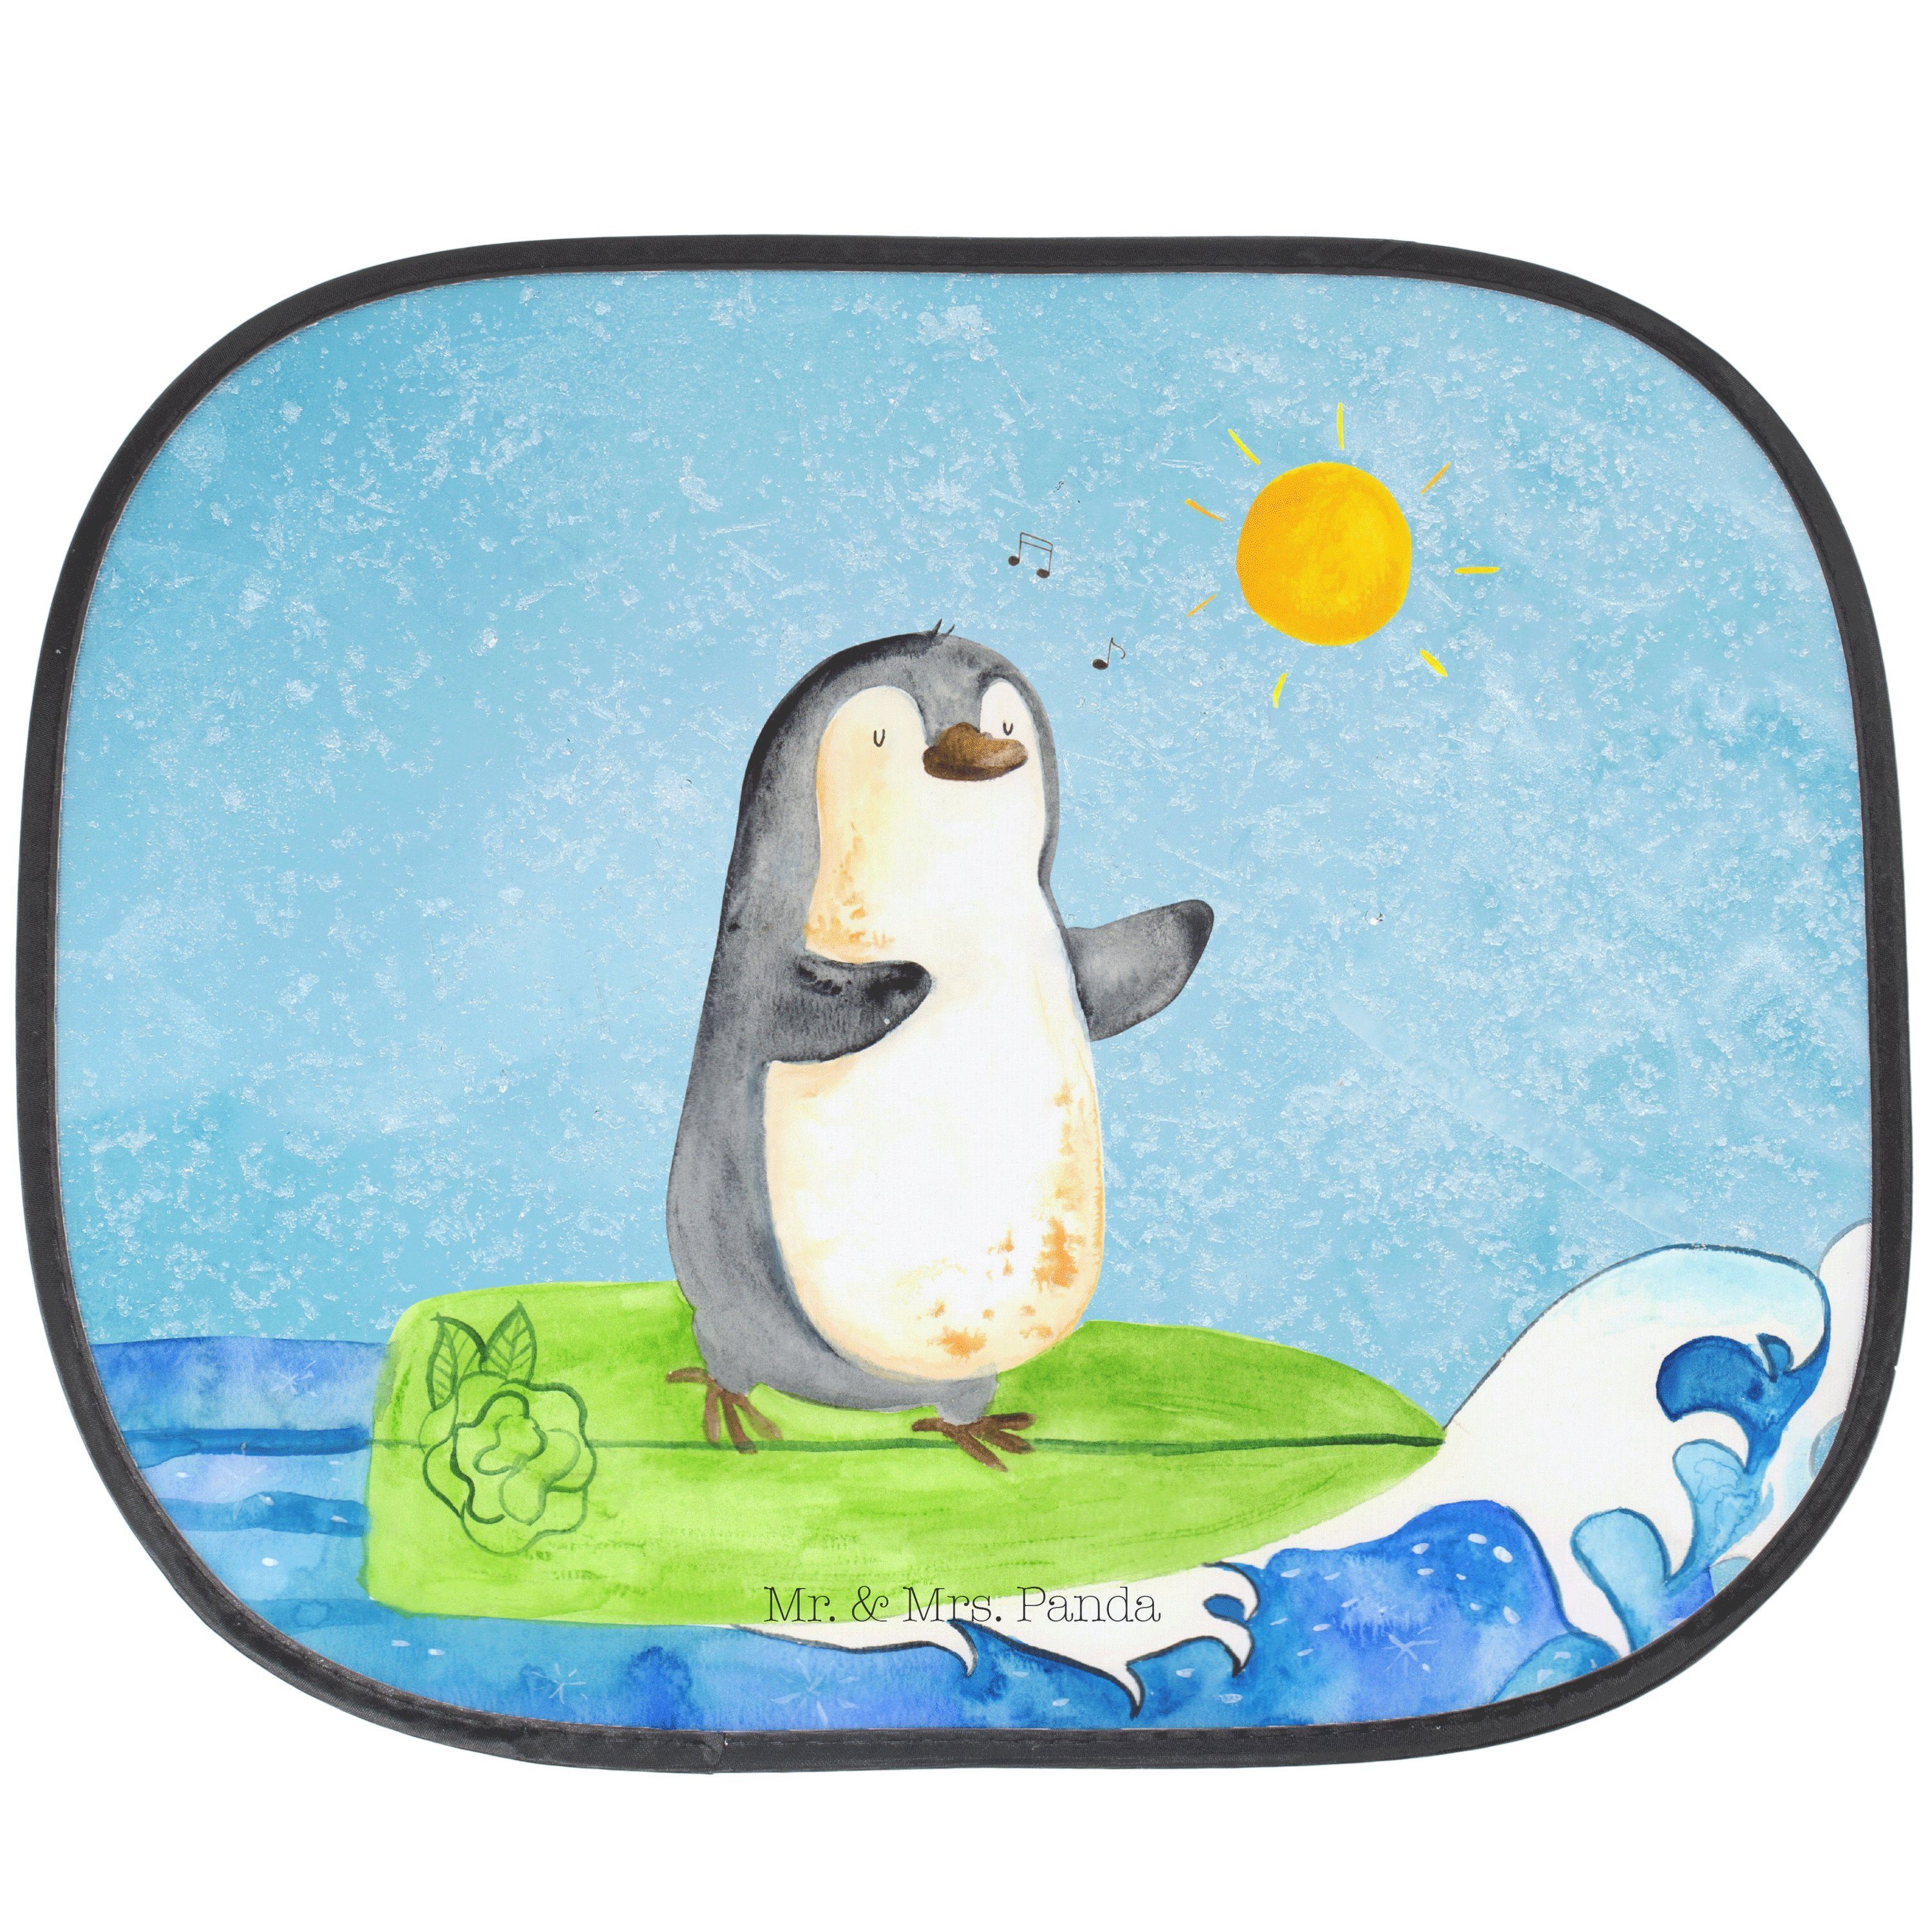 Sonnenschutz Pinguin Surfer - Eisblau - Geschenk, Auto Sonnenschutz, Wellen reiten, Mr. & Mrs. Panda, Seidenmatt